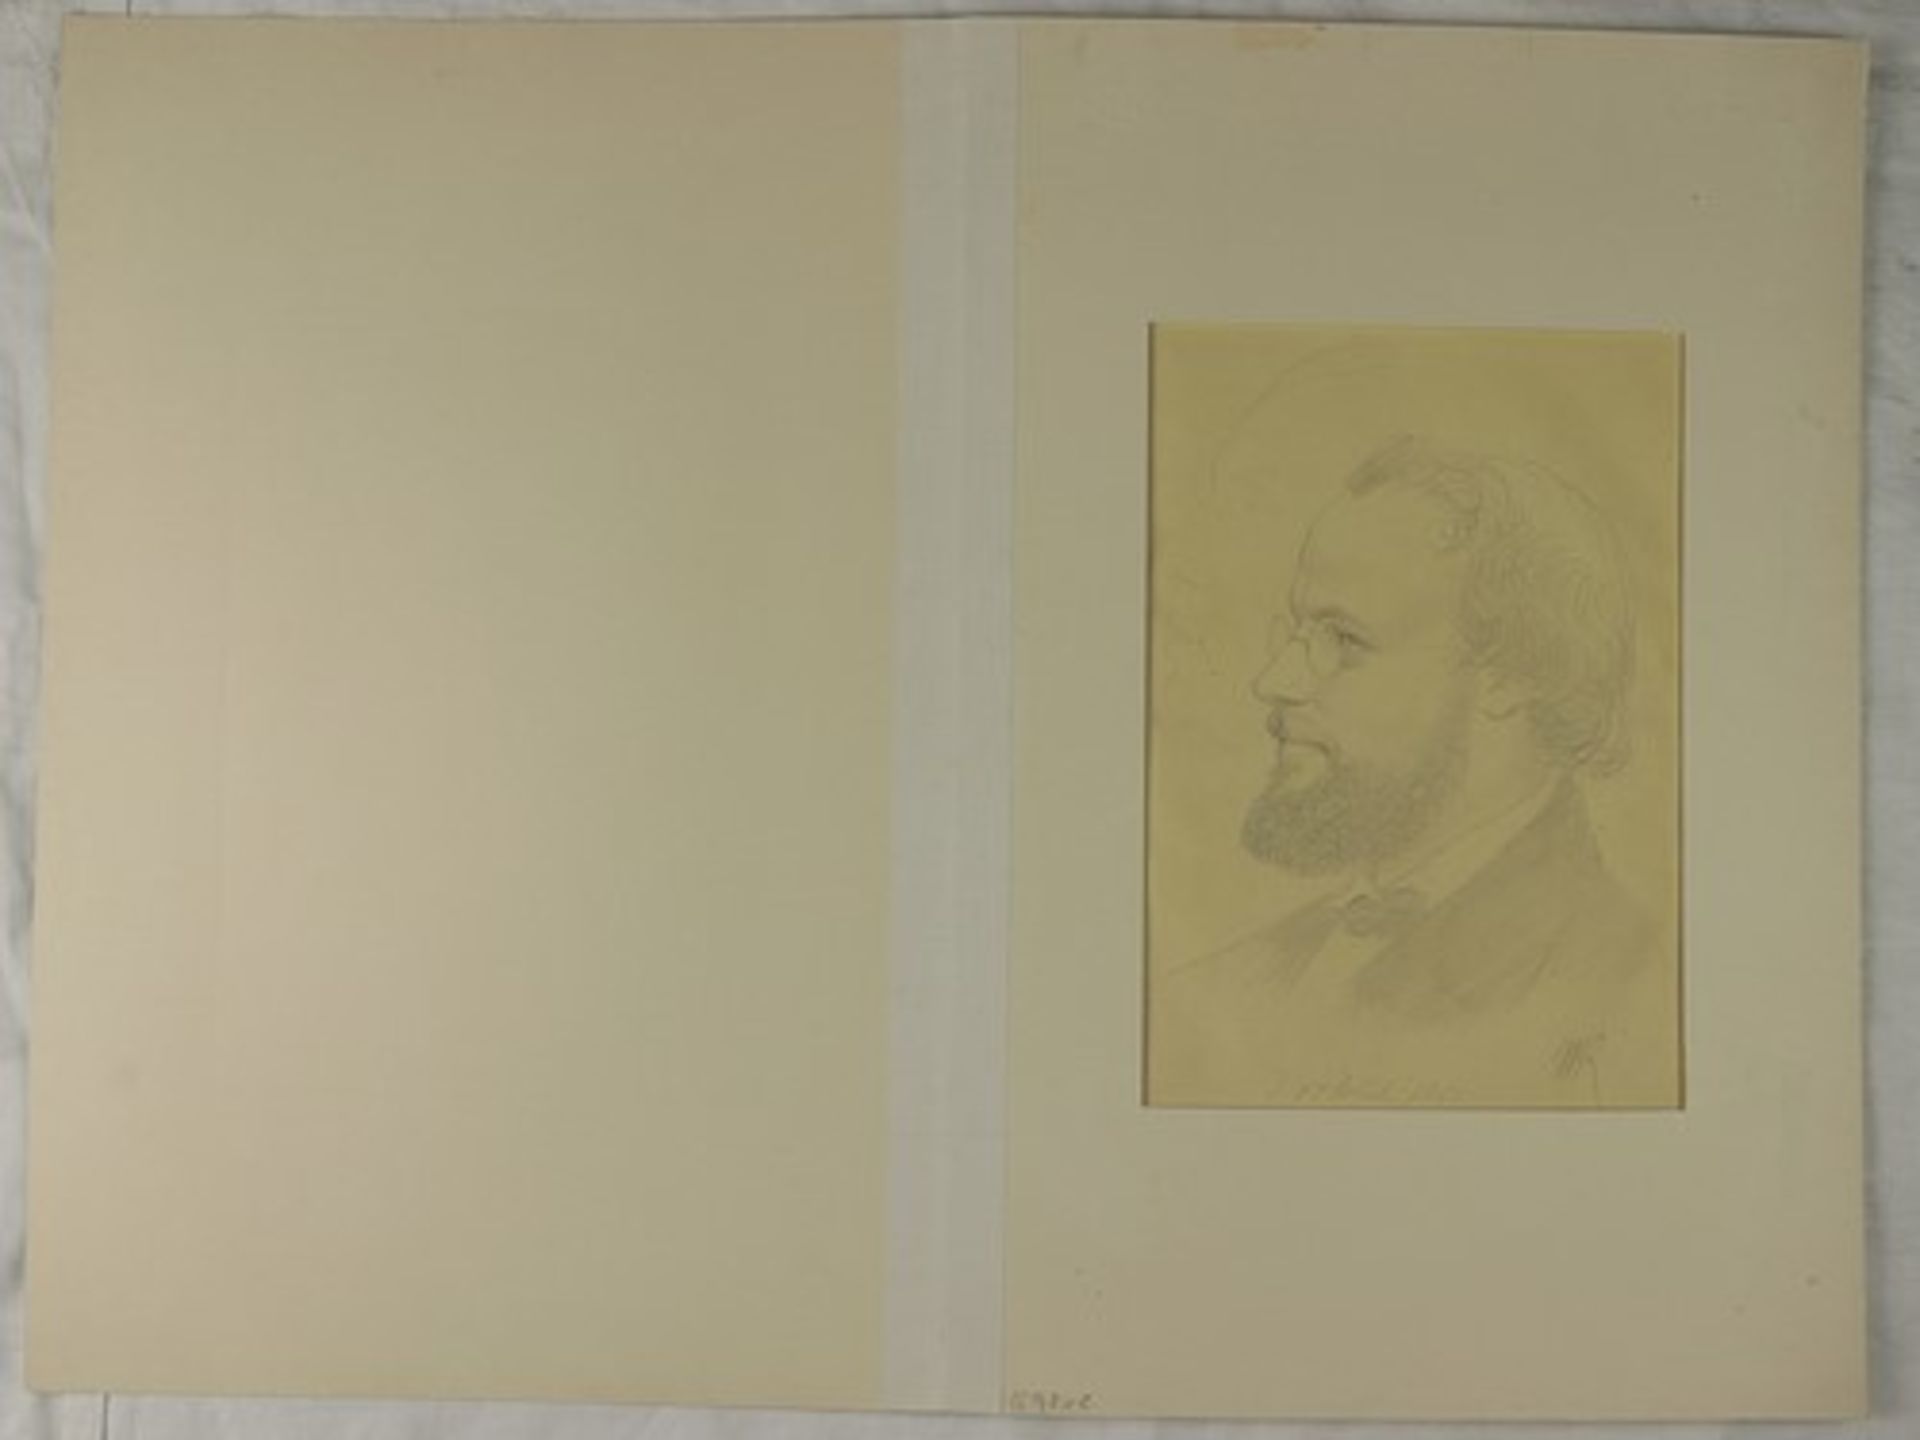 Kaulbach, Wilhelm von1805 Arolsen - 1874 München, Direktor der Münchner Kunstakademie, Mitglied